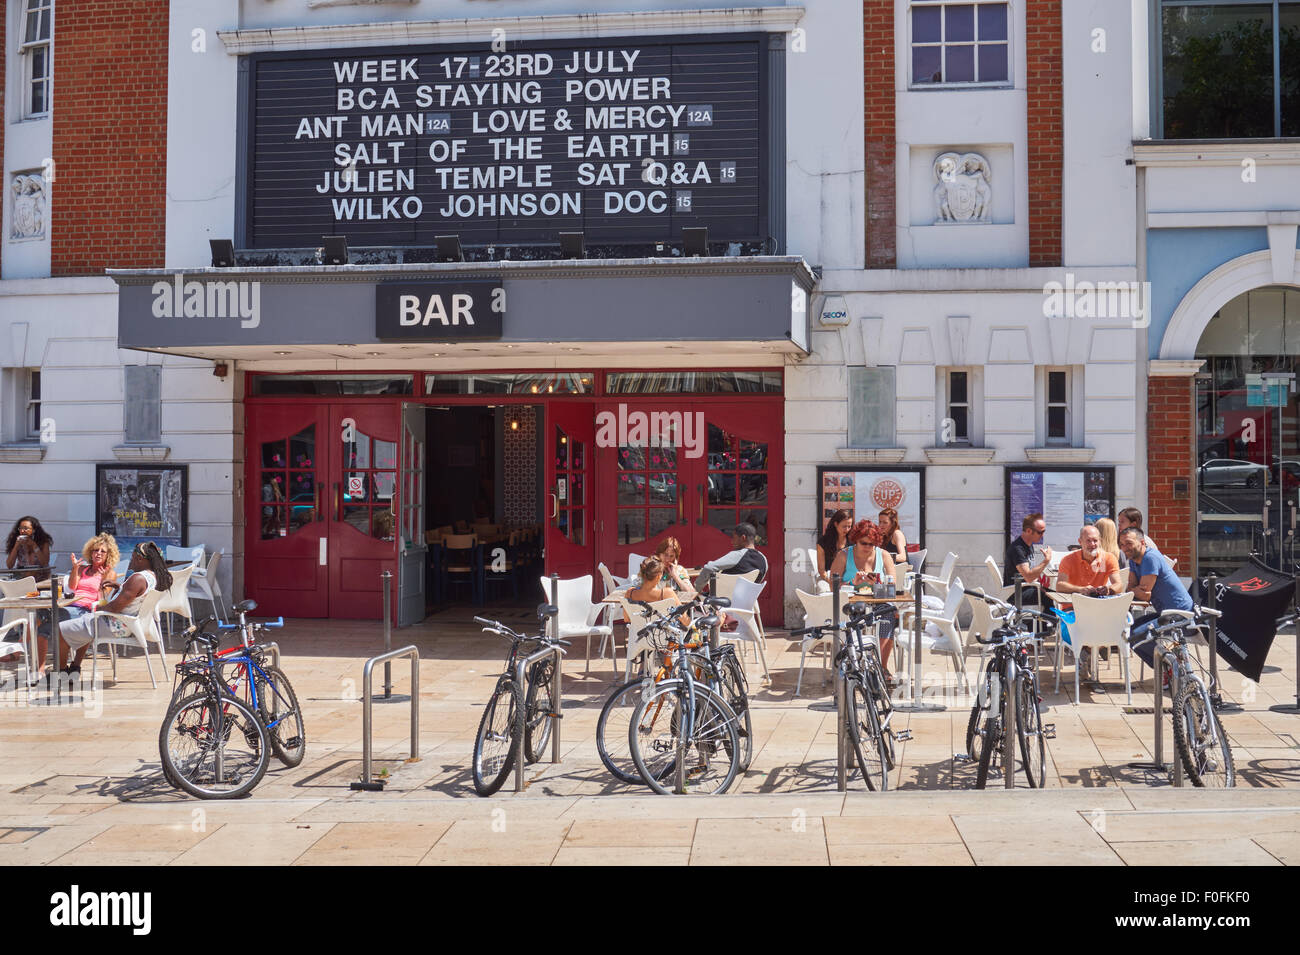 Les gens assis à l'extérieur du cinéma et un bar luxueux à Brixton, Londres Angleterre Royaume-Uni UK Banque D'Images